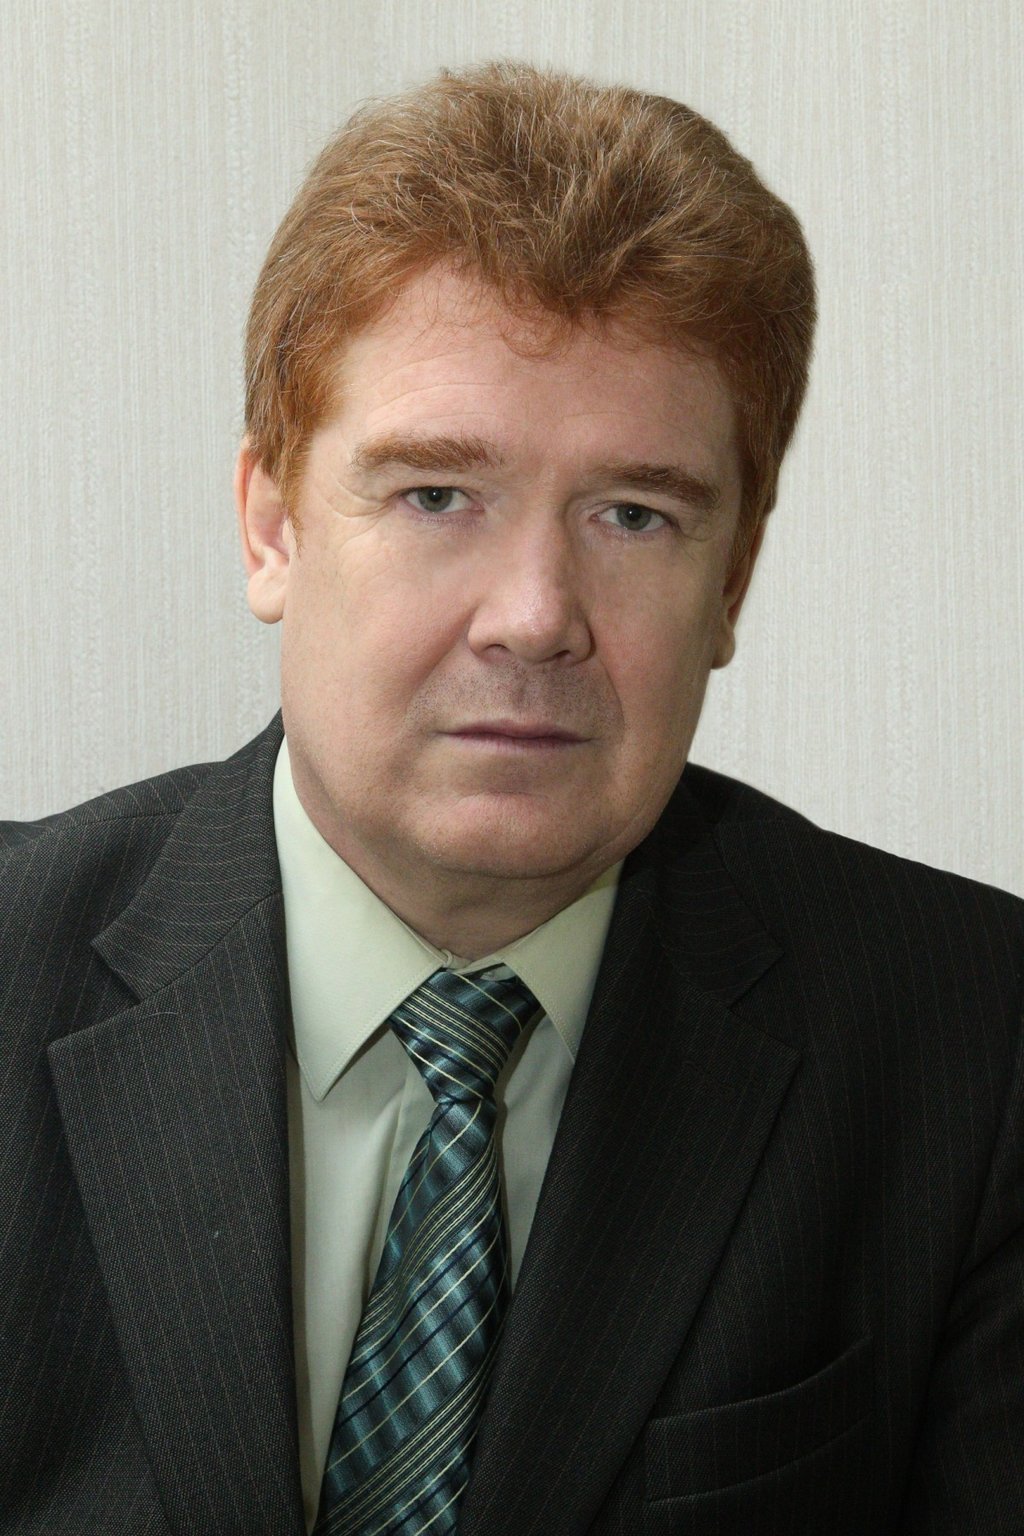 Владимир Елистратов подал заявление об увольнении по собственному желанию.